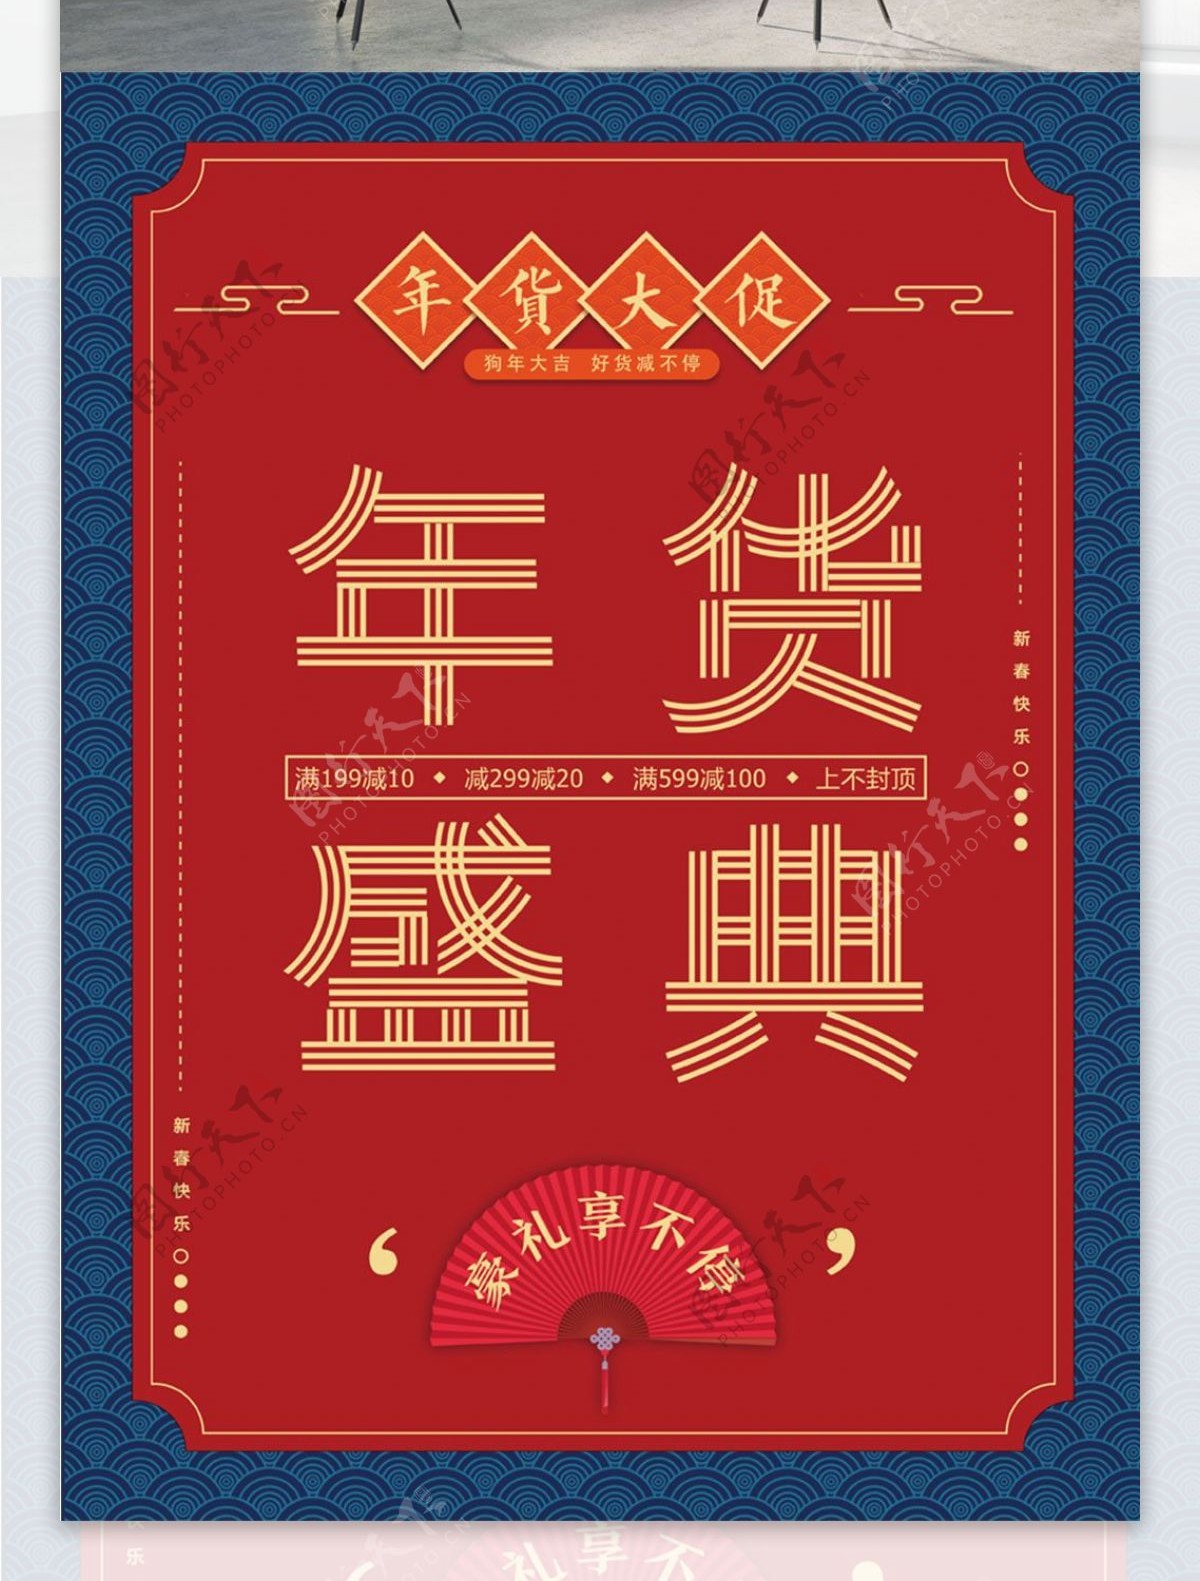 创意中国风喜庆年货盛典海报设计